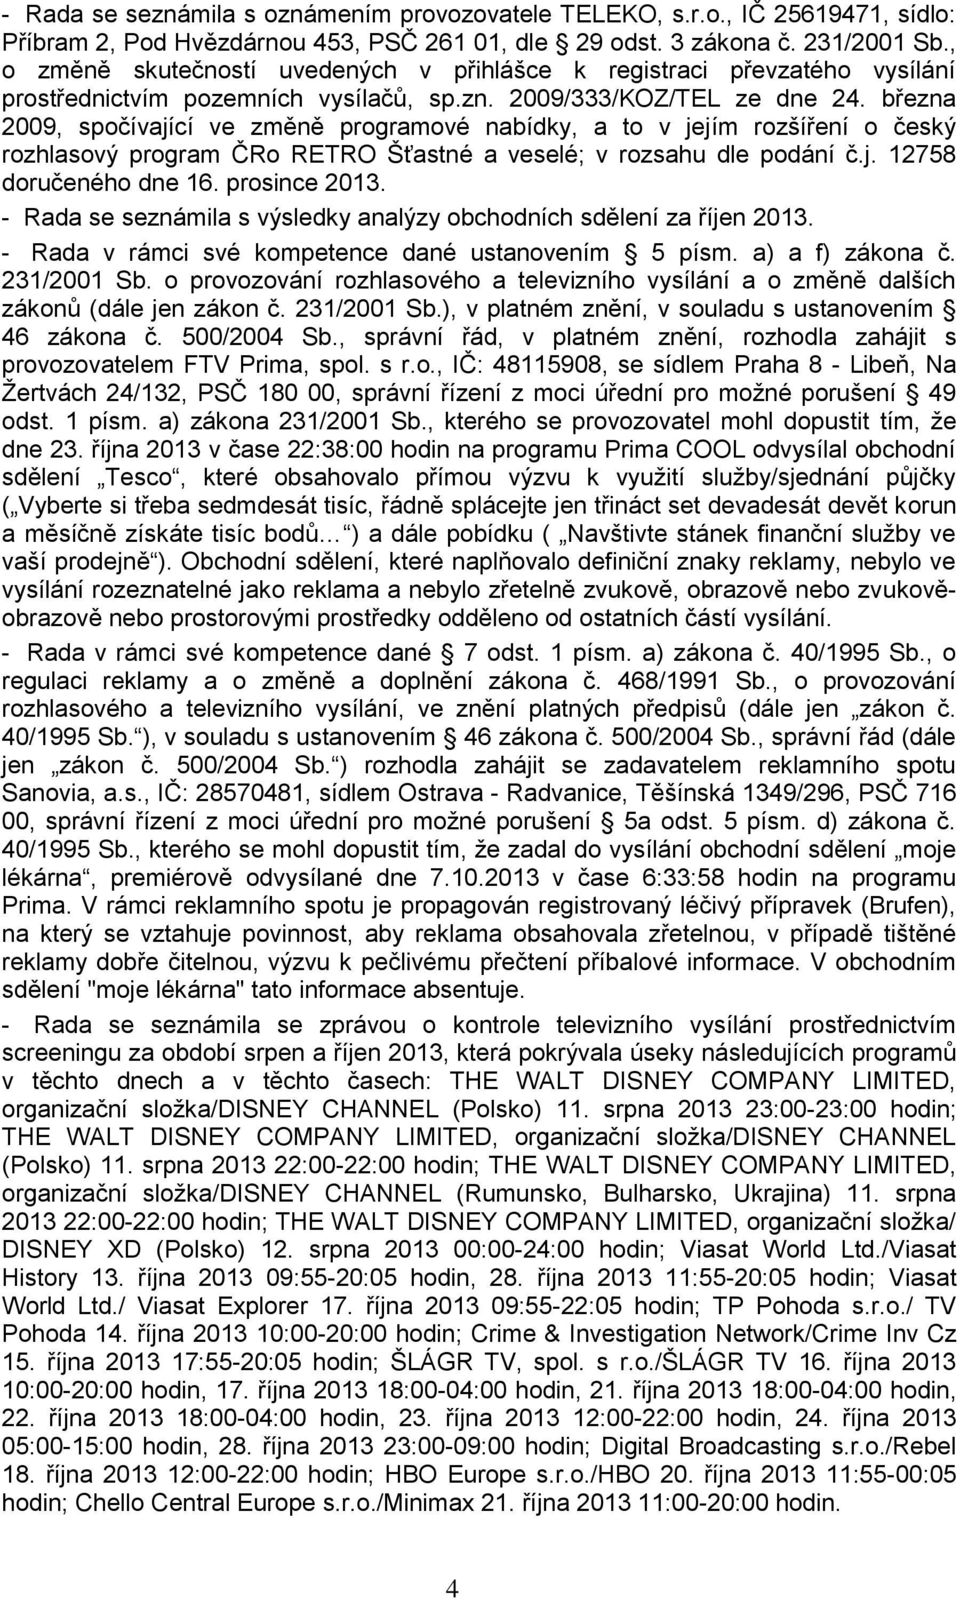 března 2009, spočívající ve změně programové nabídky, a to v jejím rozšíření o český rozhlasový program ČRo RETRO Šťastné a veselé; v rozsahu dle podání č.j. 12758 doručeného dne 16. prosince 2013.